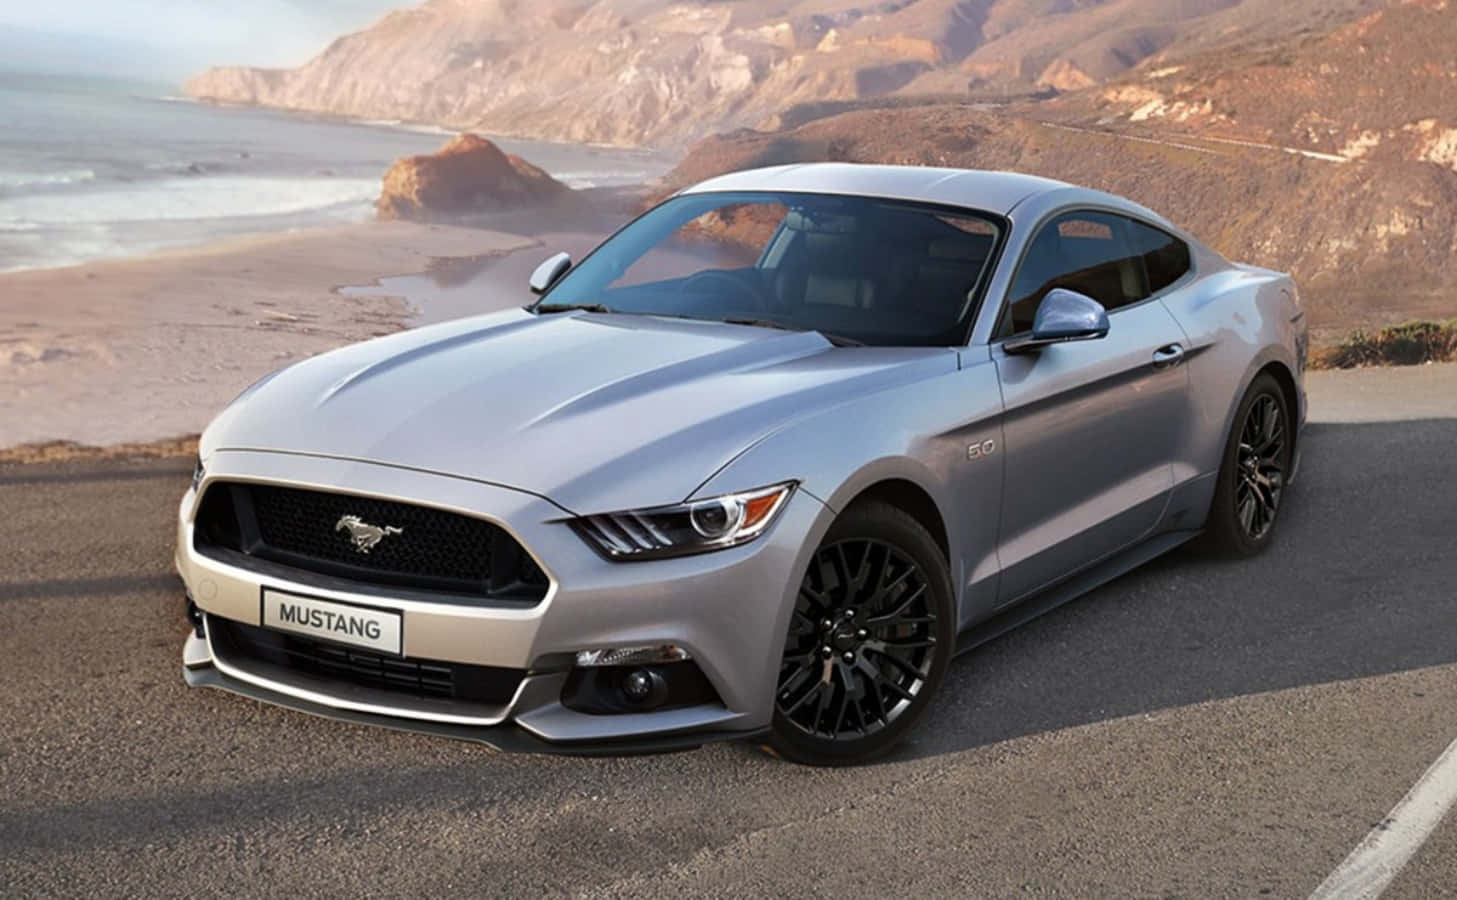 Mustangmuscle Car Bietet Ihnen Frontplätze Für Das Ultimative Adrenalin-erlebnis.